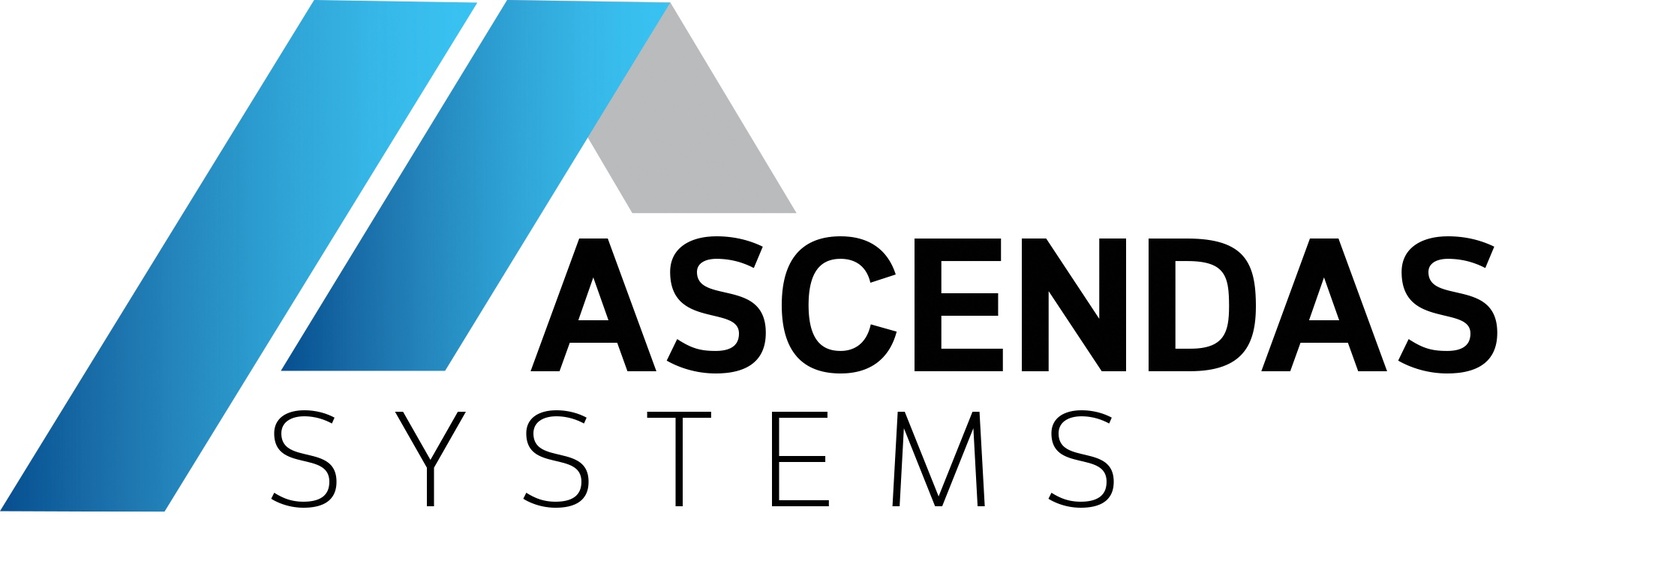 Ascendas Systems Co., Ltd.